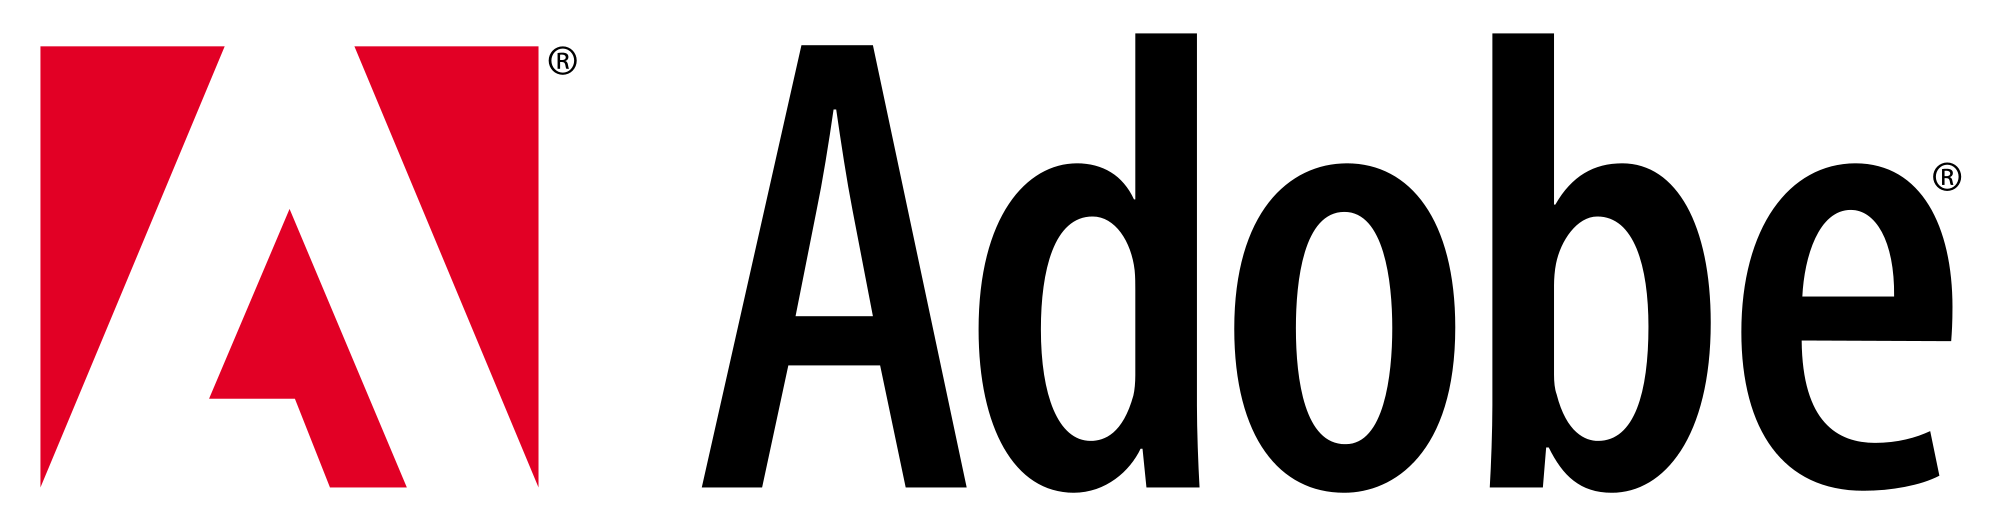 Adobe Logo PNG Image HD